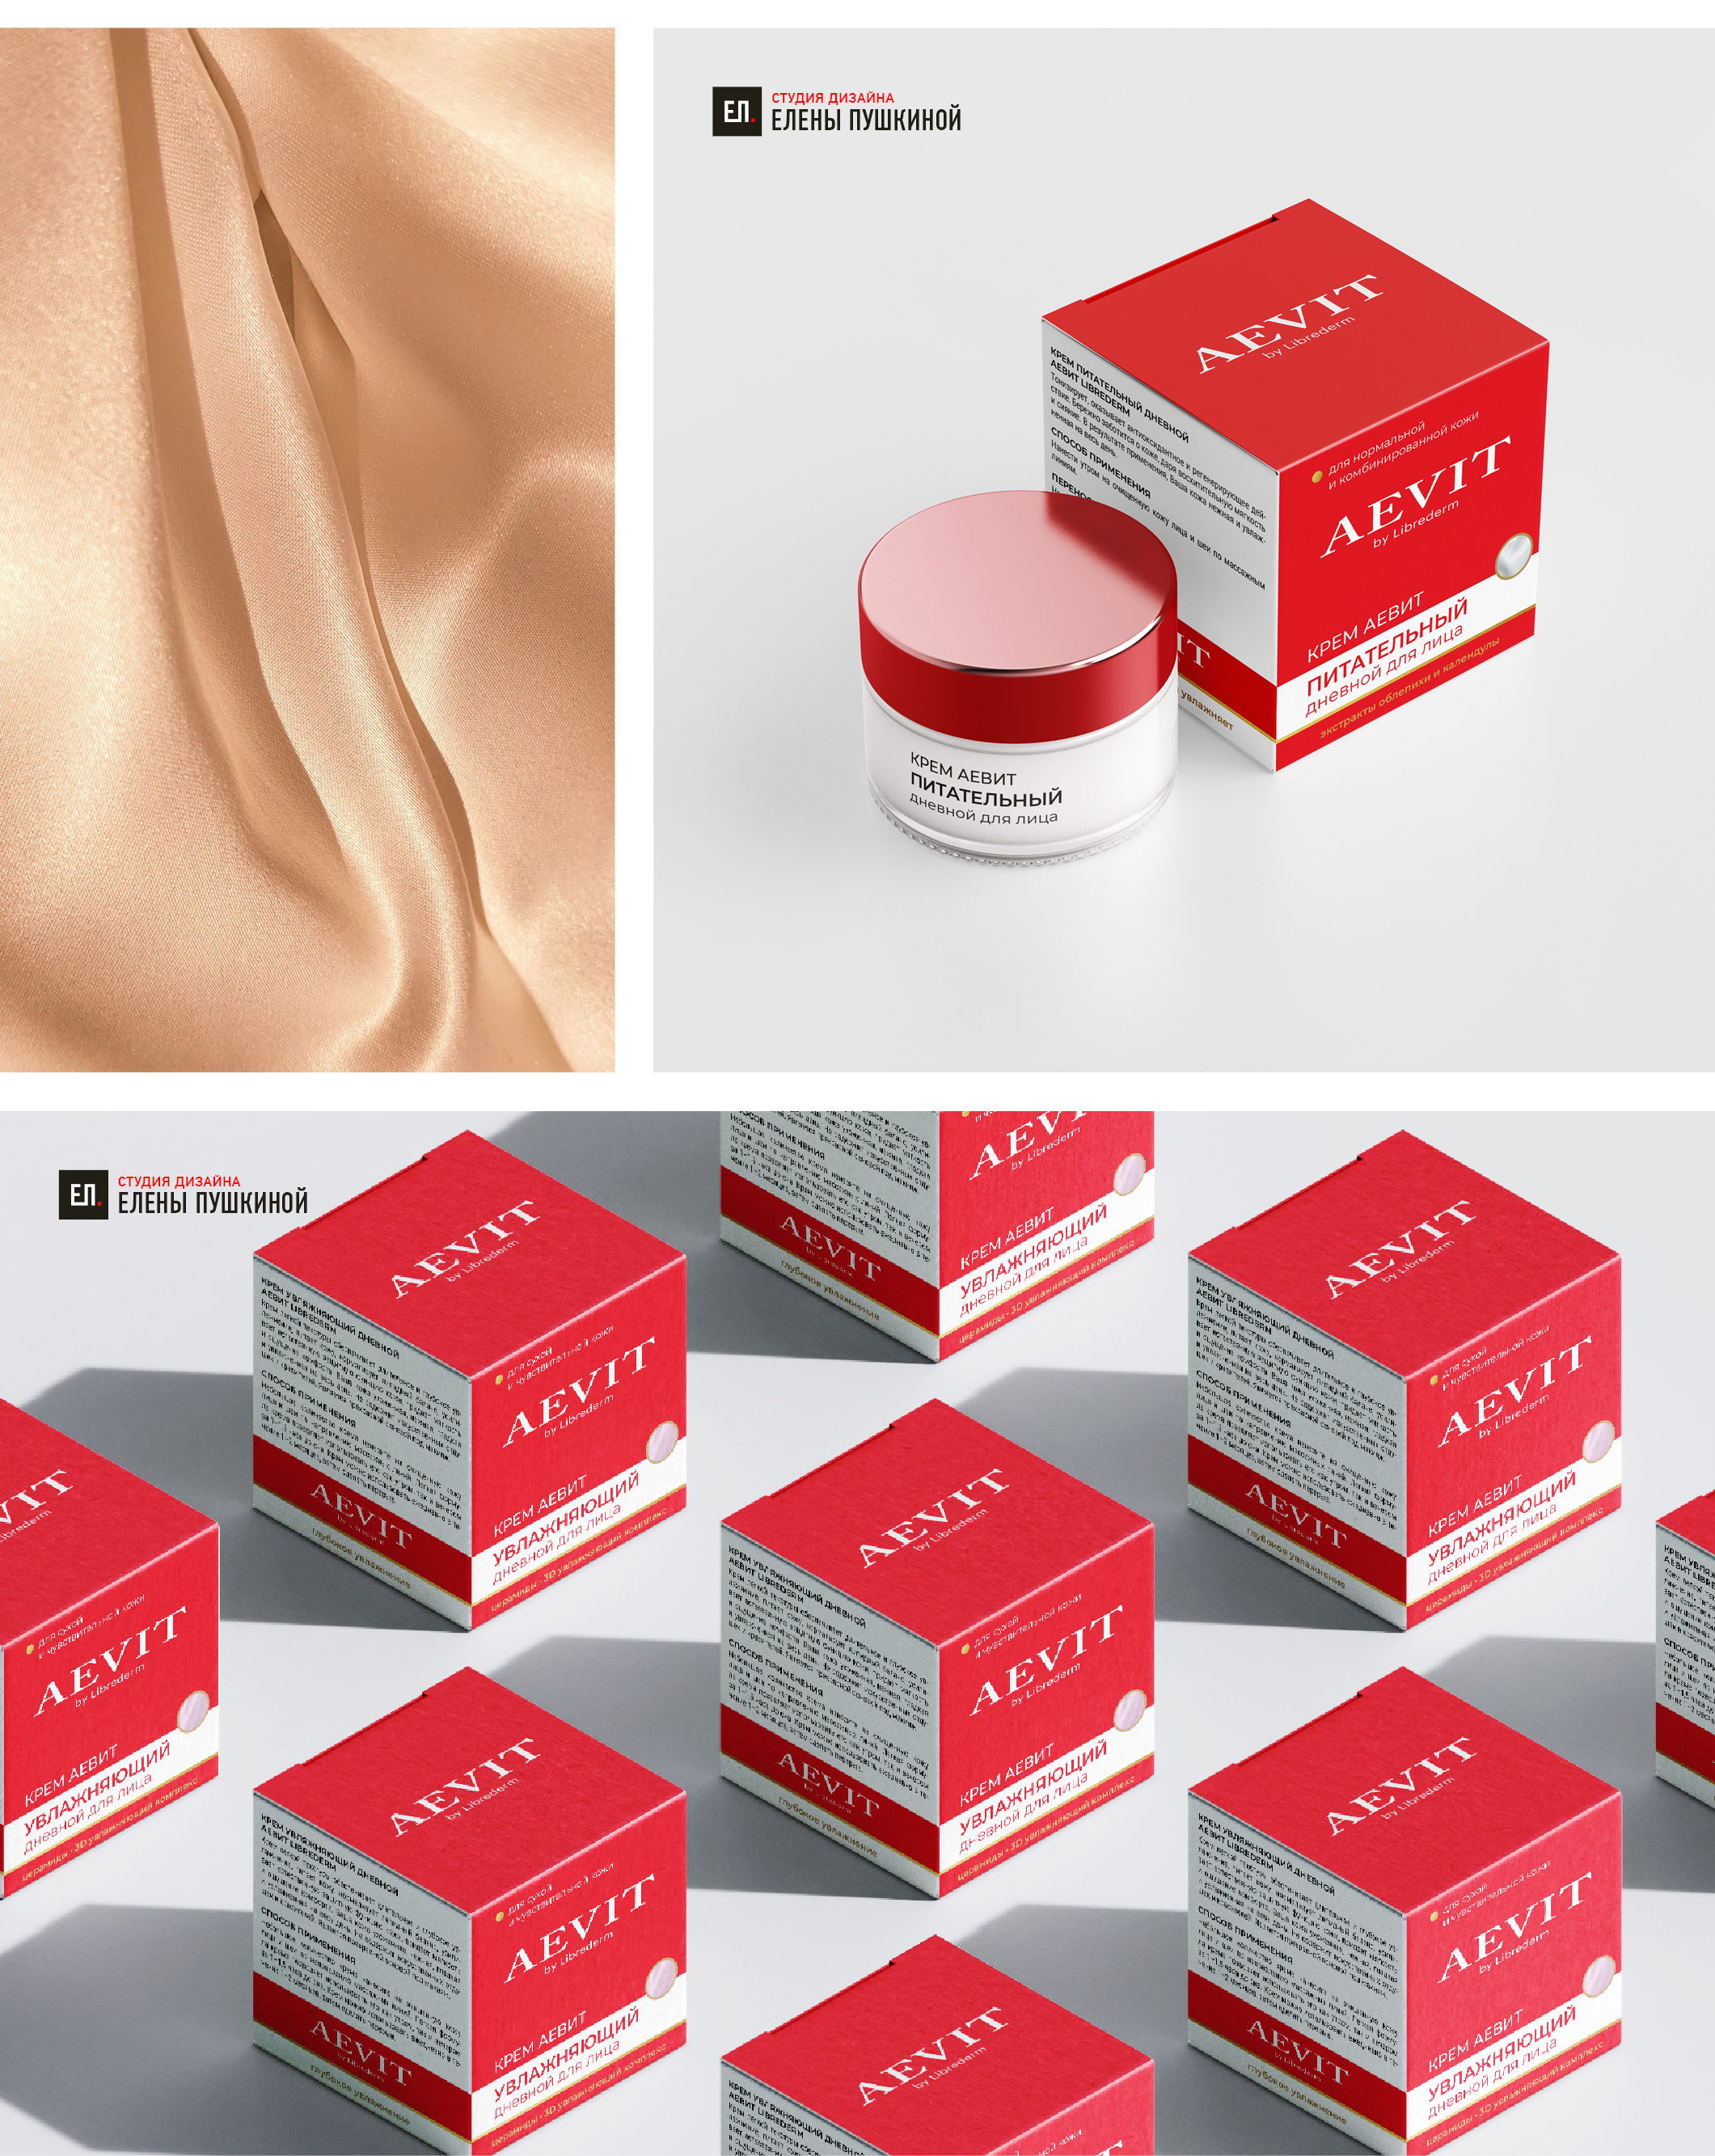 Редизайн упаковки для линейки косметических средств AEVit by LIBREDERM Дизайн упаковки Портфолио